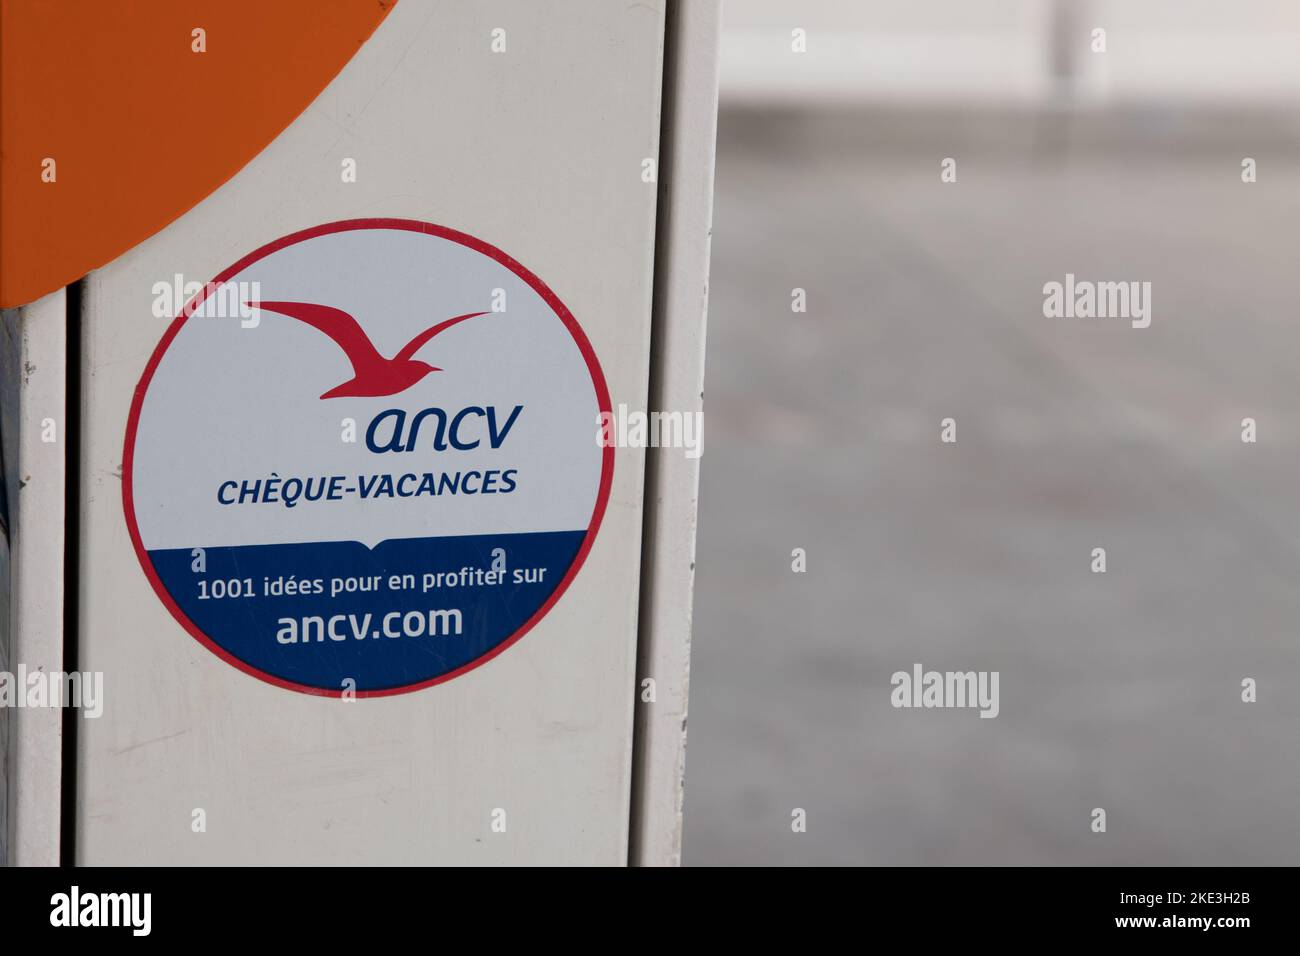 Ancv Banque de photographies et d'images à haute résolution - Alamy